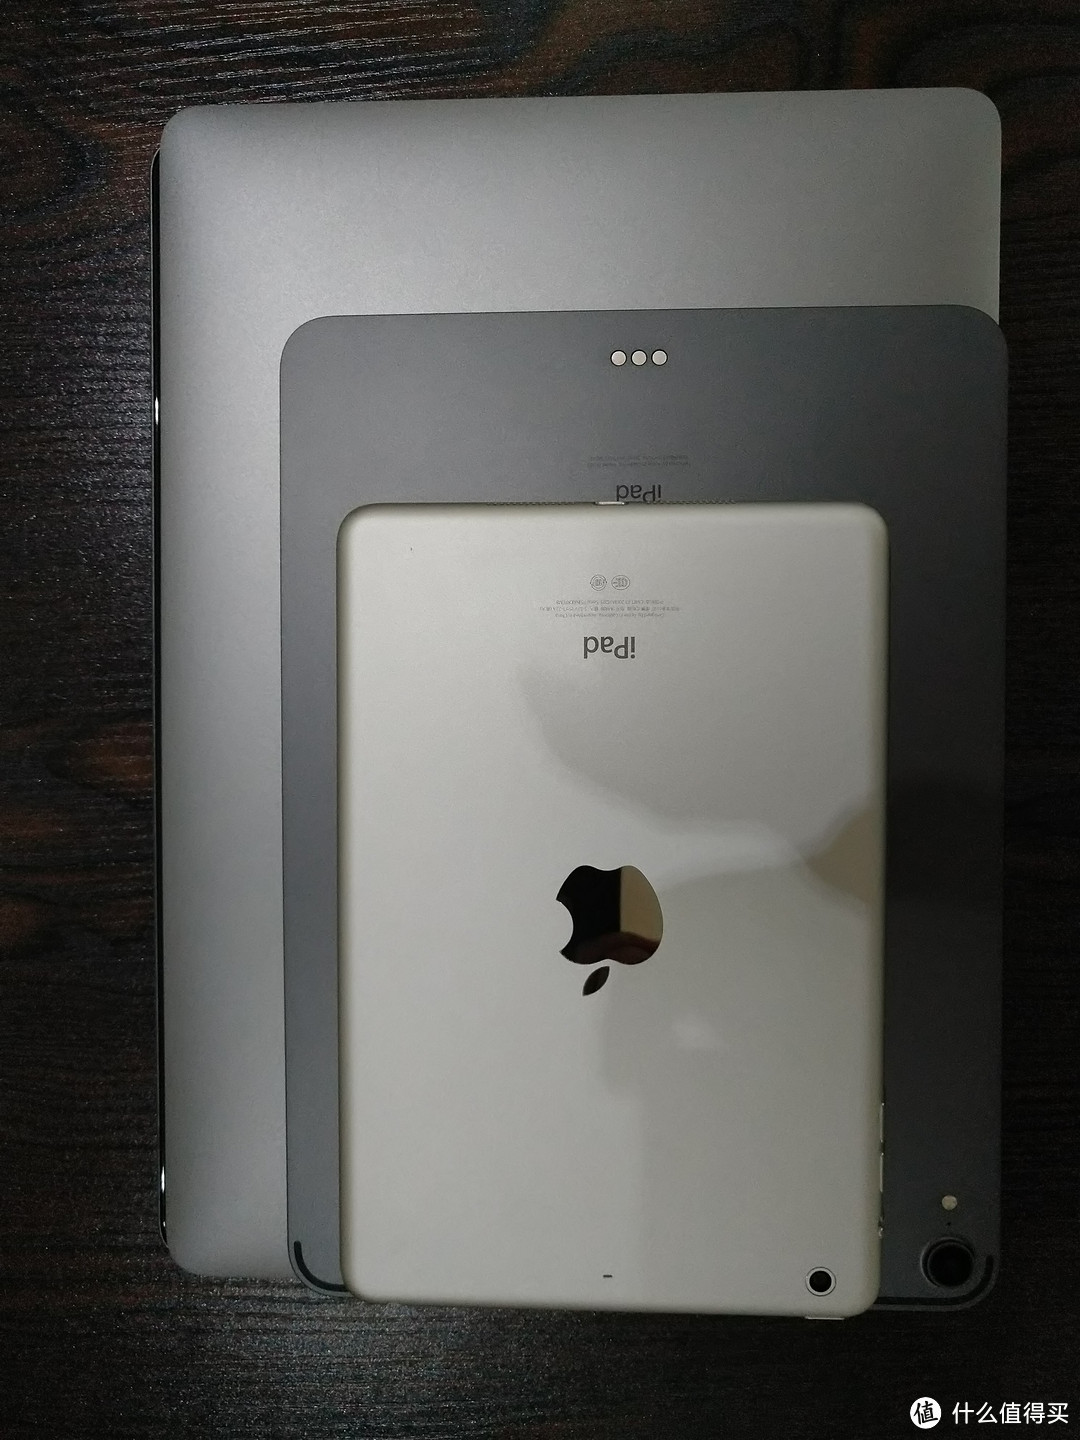 垒起来可以见到 12.9的iPad还是大出了一条缝